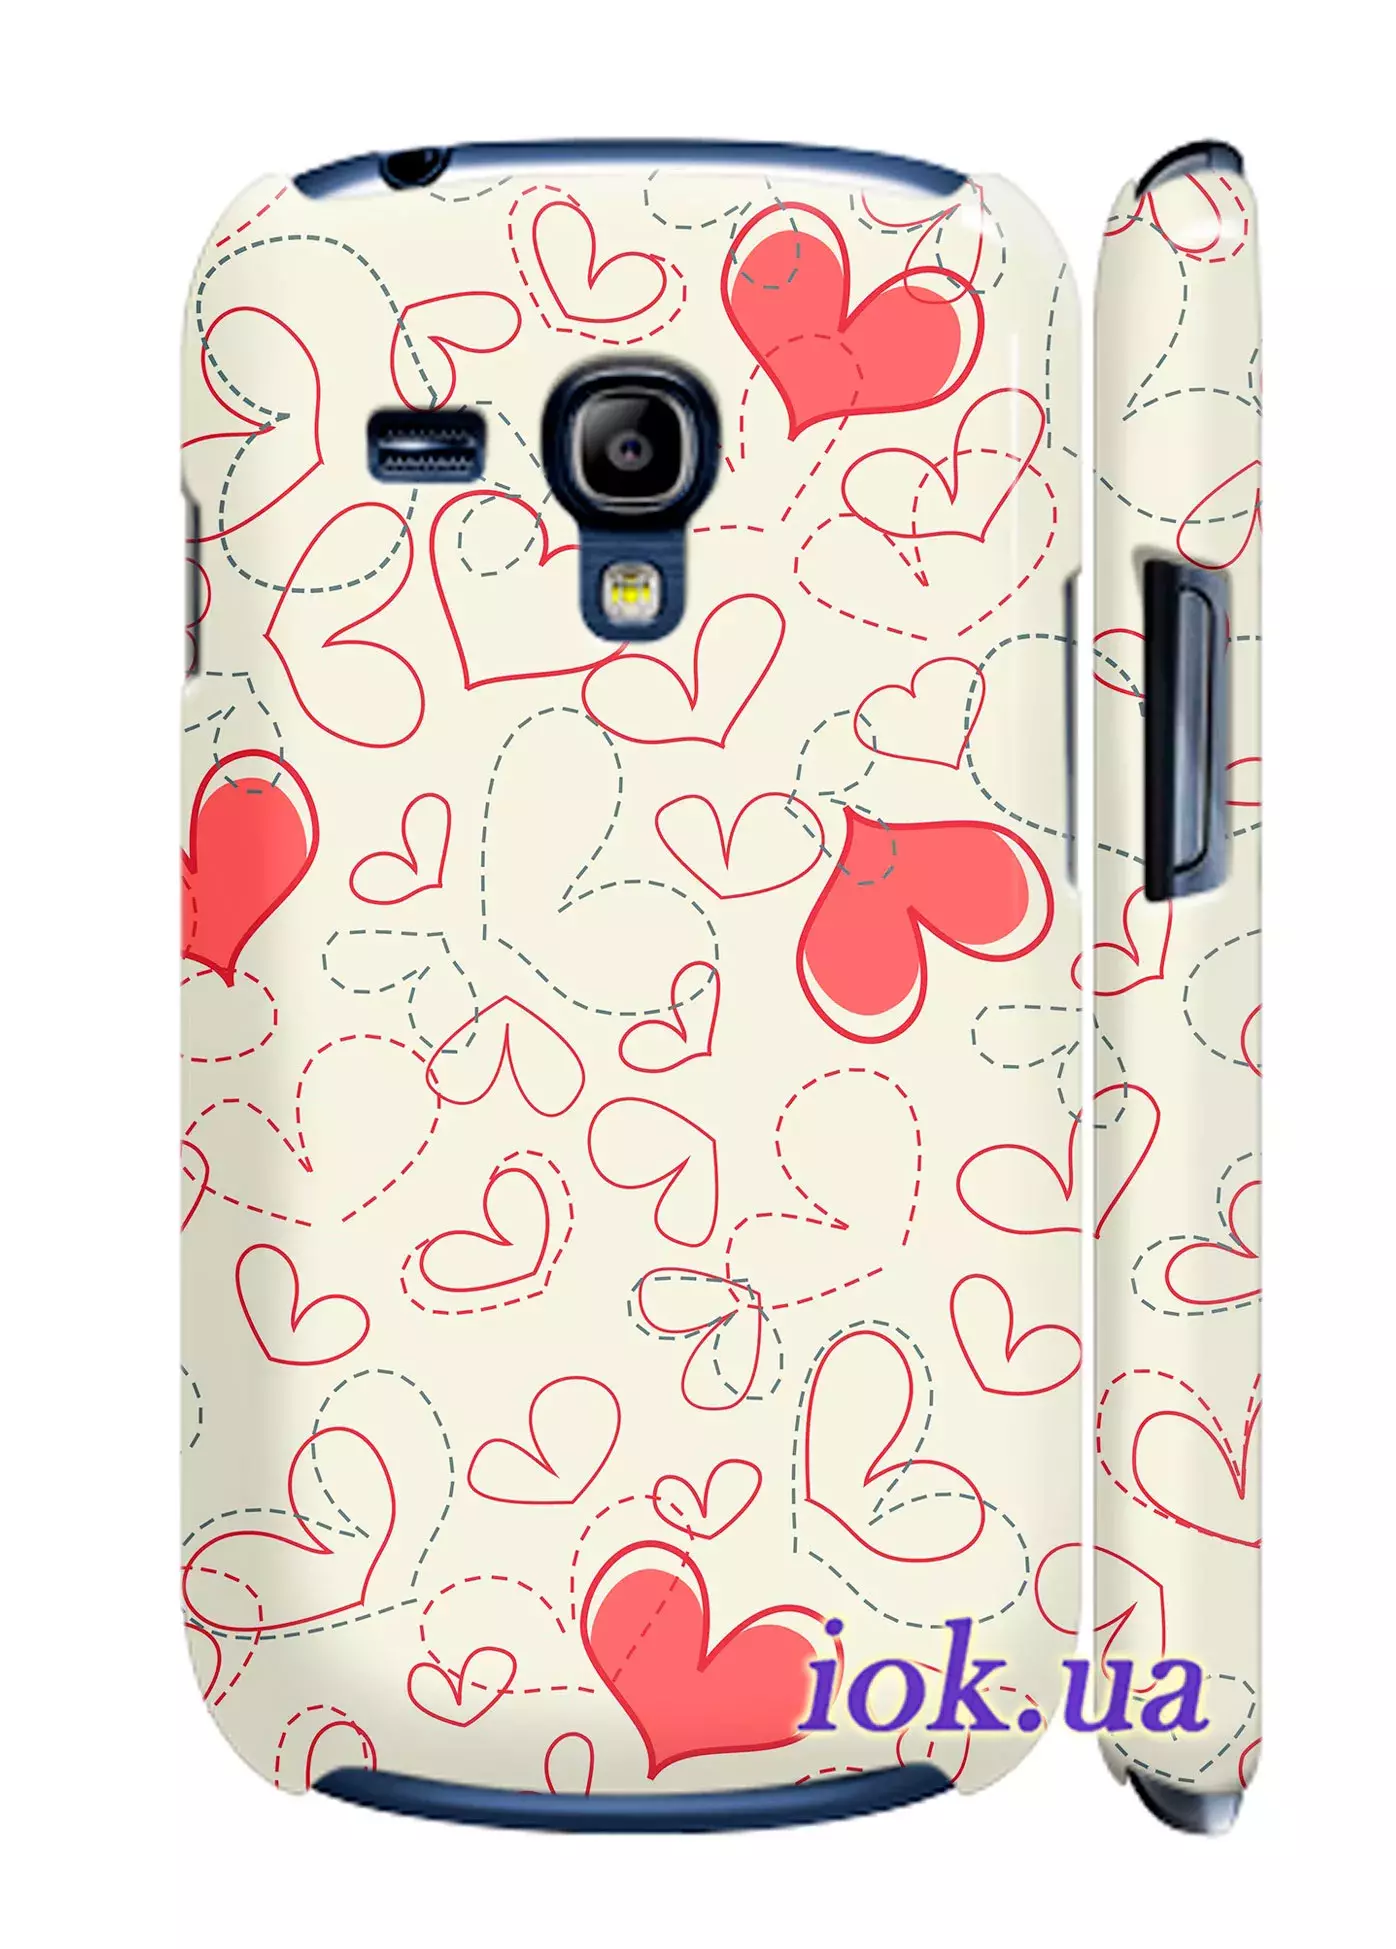 Чехол для Galaxy S3 Mini - Сердечки